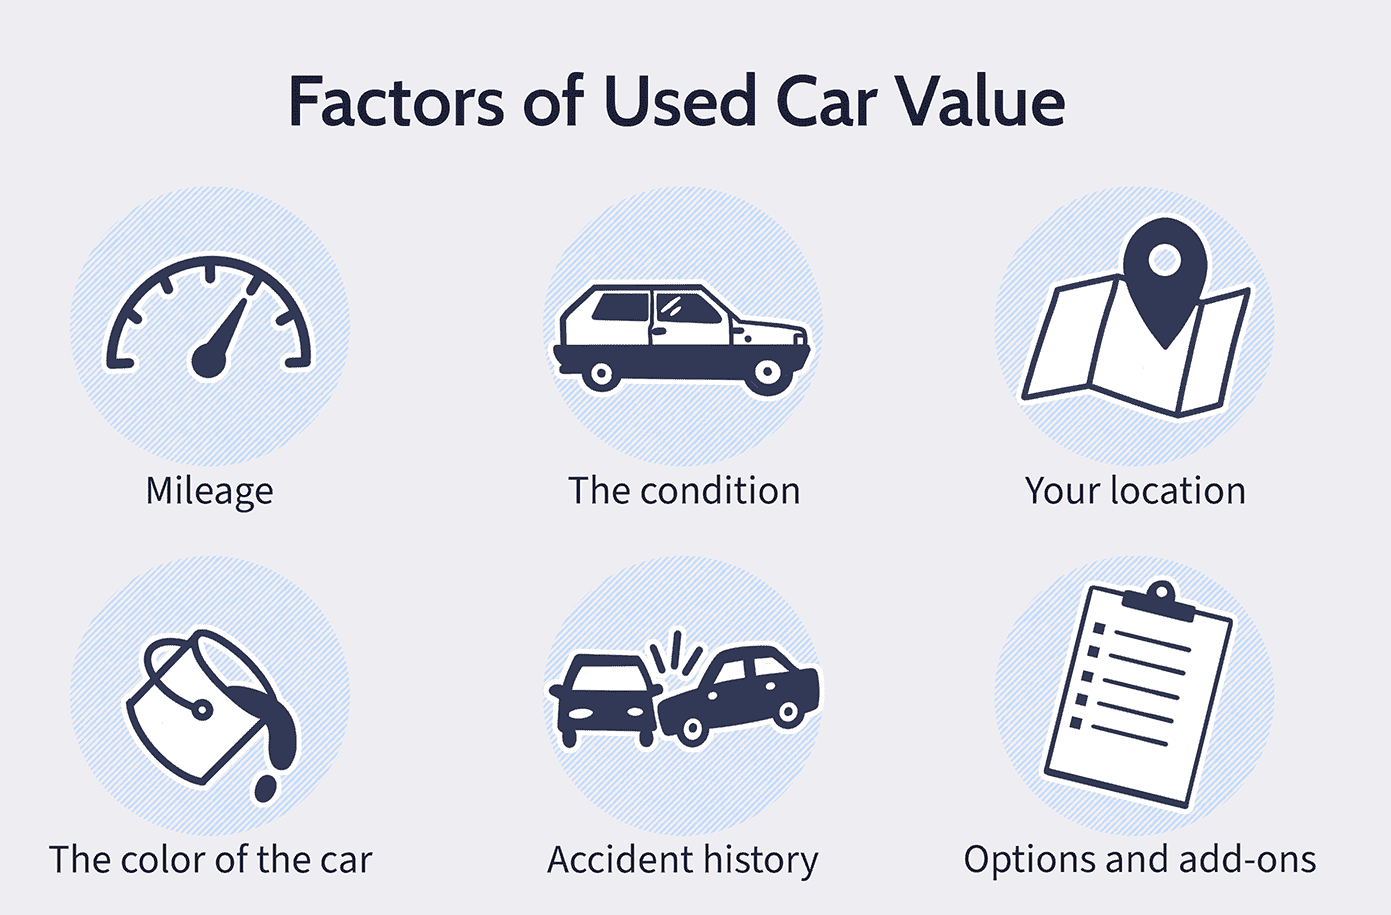 car resale value